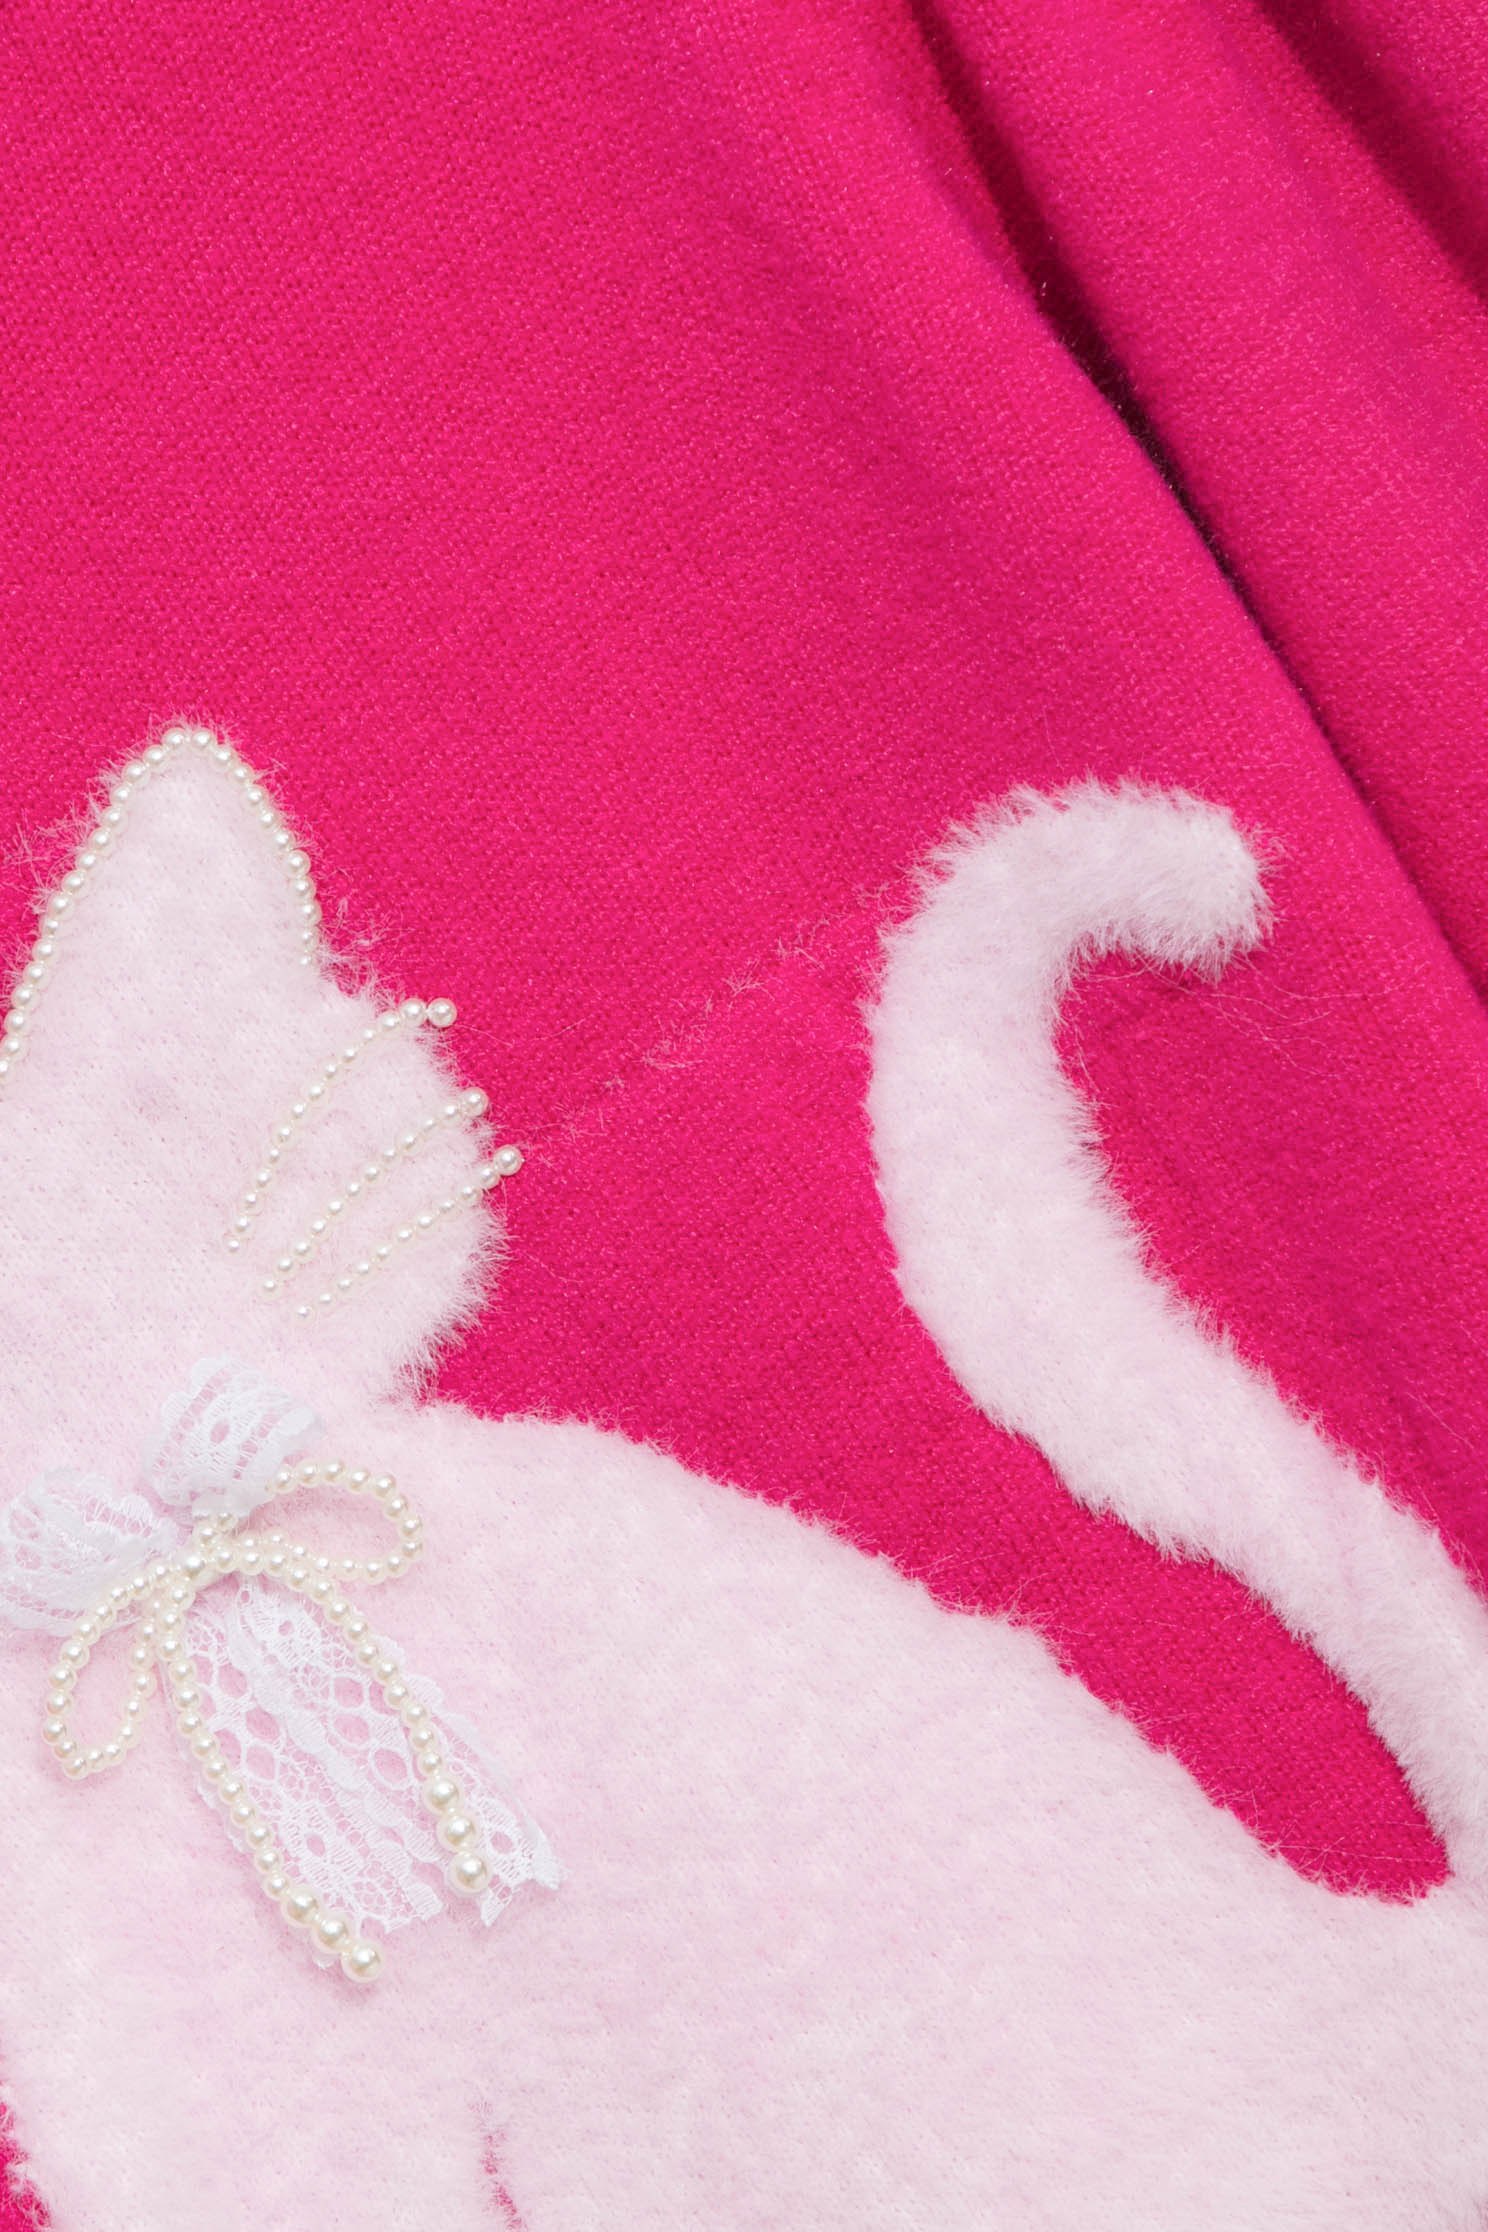 泡泡糖粉貓咪針織上衣泡泡糖粉貓咪針織上衣,上衣,春夏穿搭,熱銷排行,珍珠,針織,針織上衣,針織衫